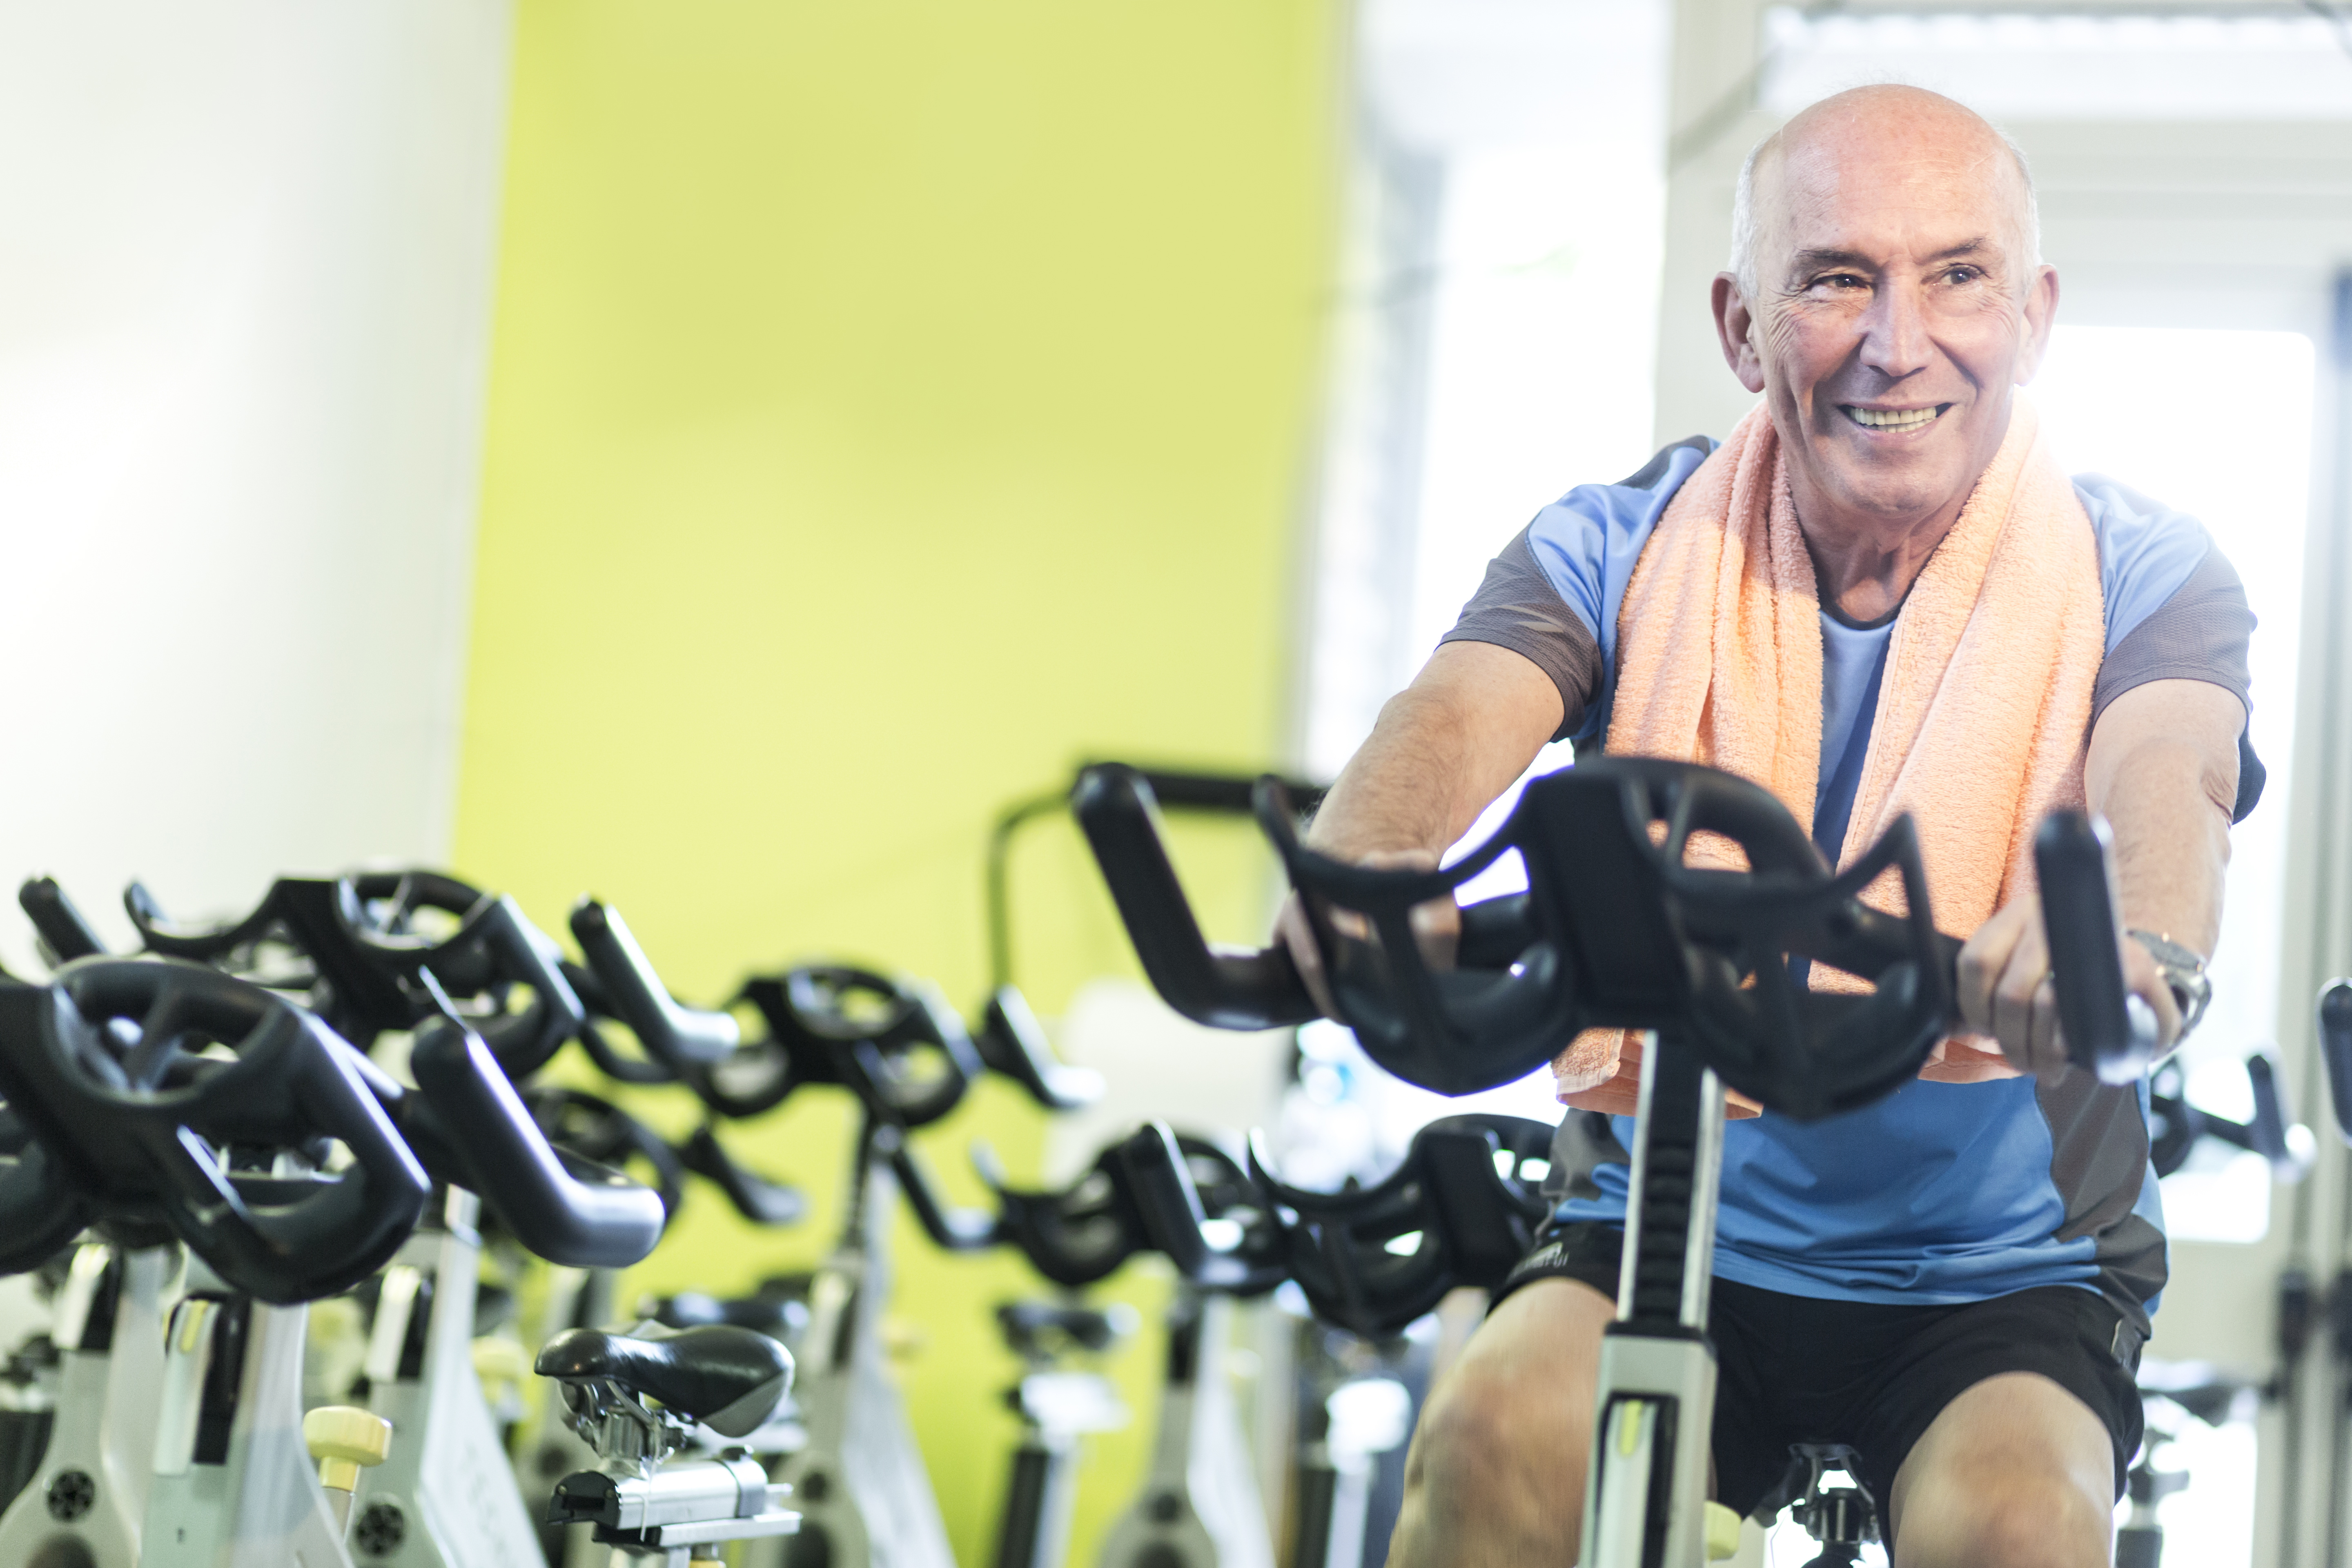 La pratique de l’exercice même chez les personnes très âgées est inversement associée à la fatigabilité -et donc associée à l’espérance de vie (Visuel Adobe Stock 242505520)